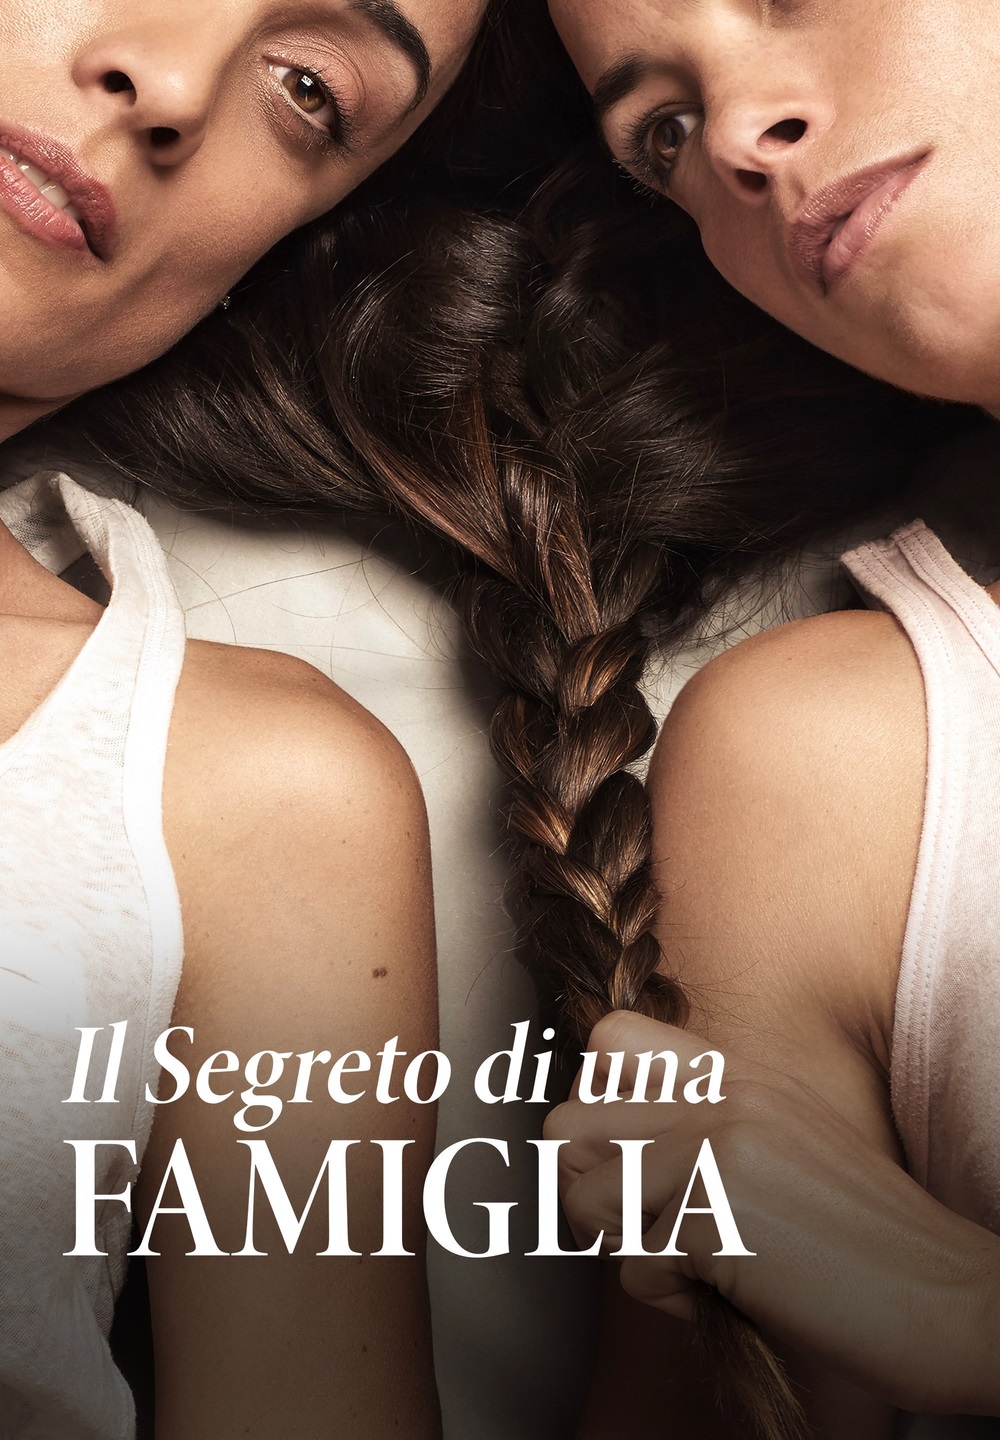 Il segreto di una famiglia [HD] (2019)